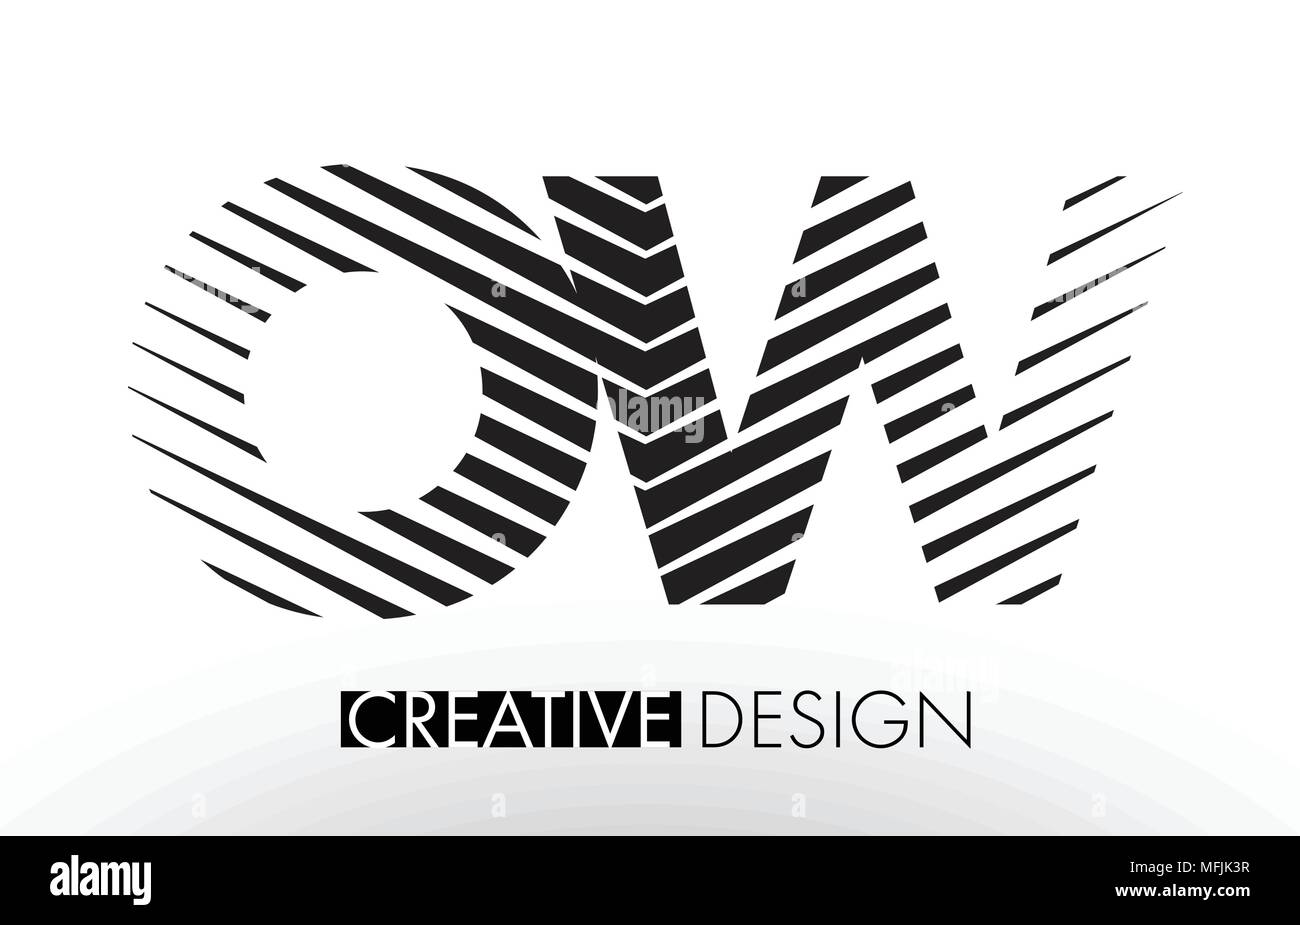 OW O W Zeilen schreiben Design mit Kreativen elegante Zebra Vector Illustration. Stock Vektor